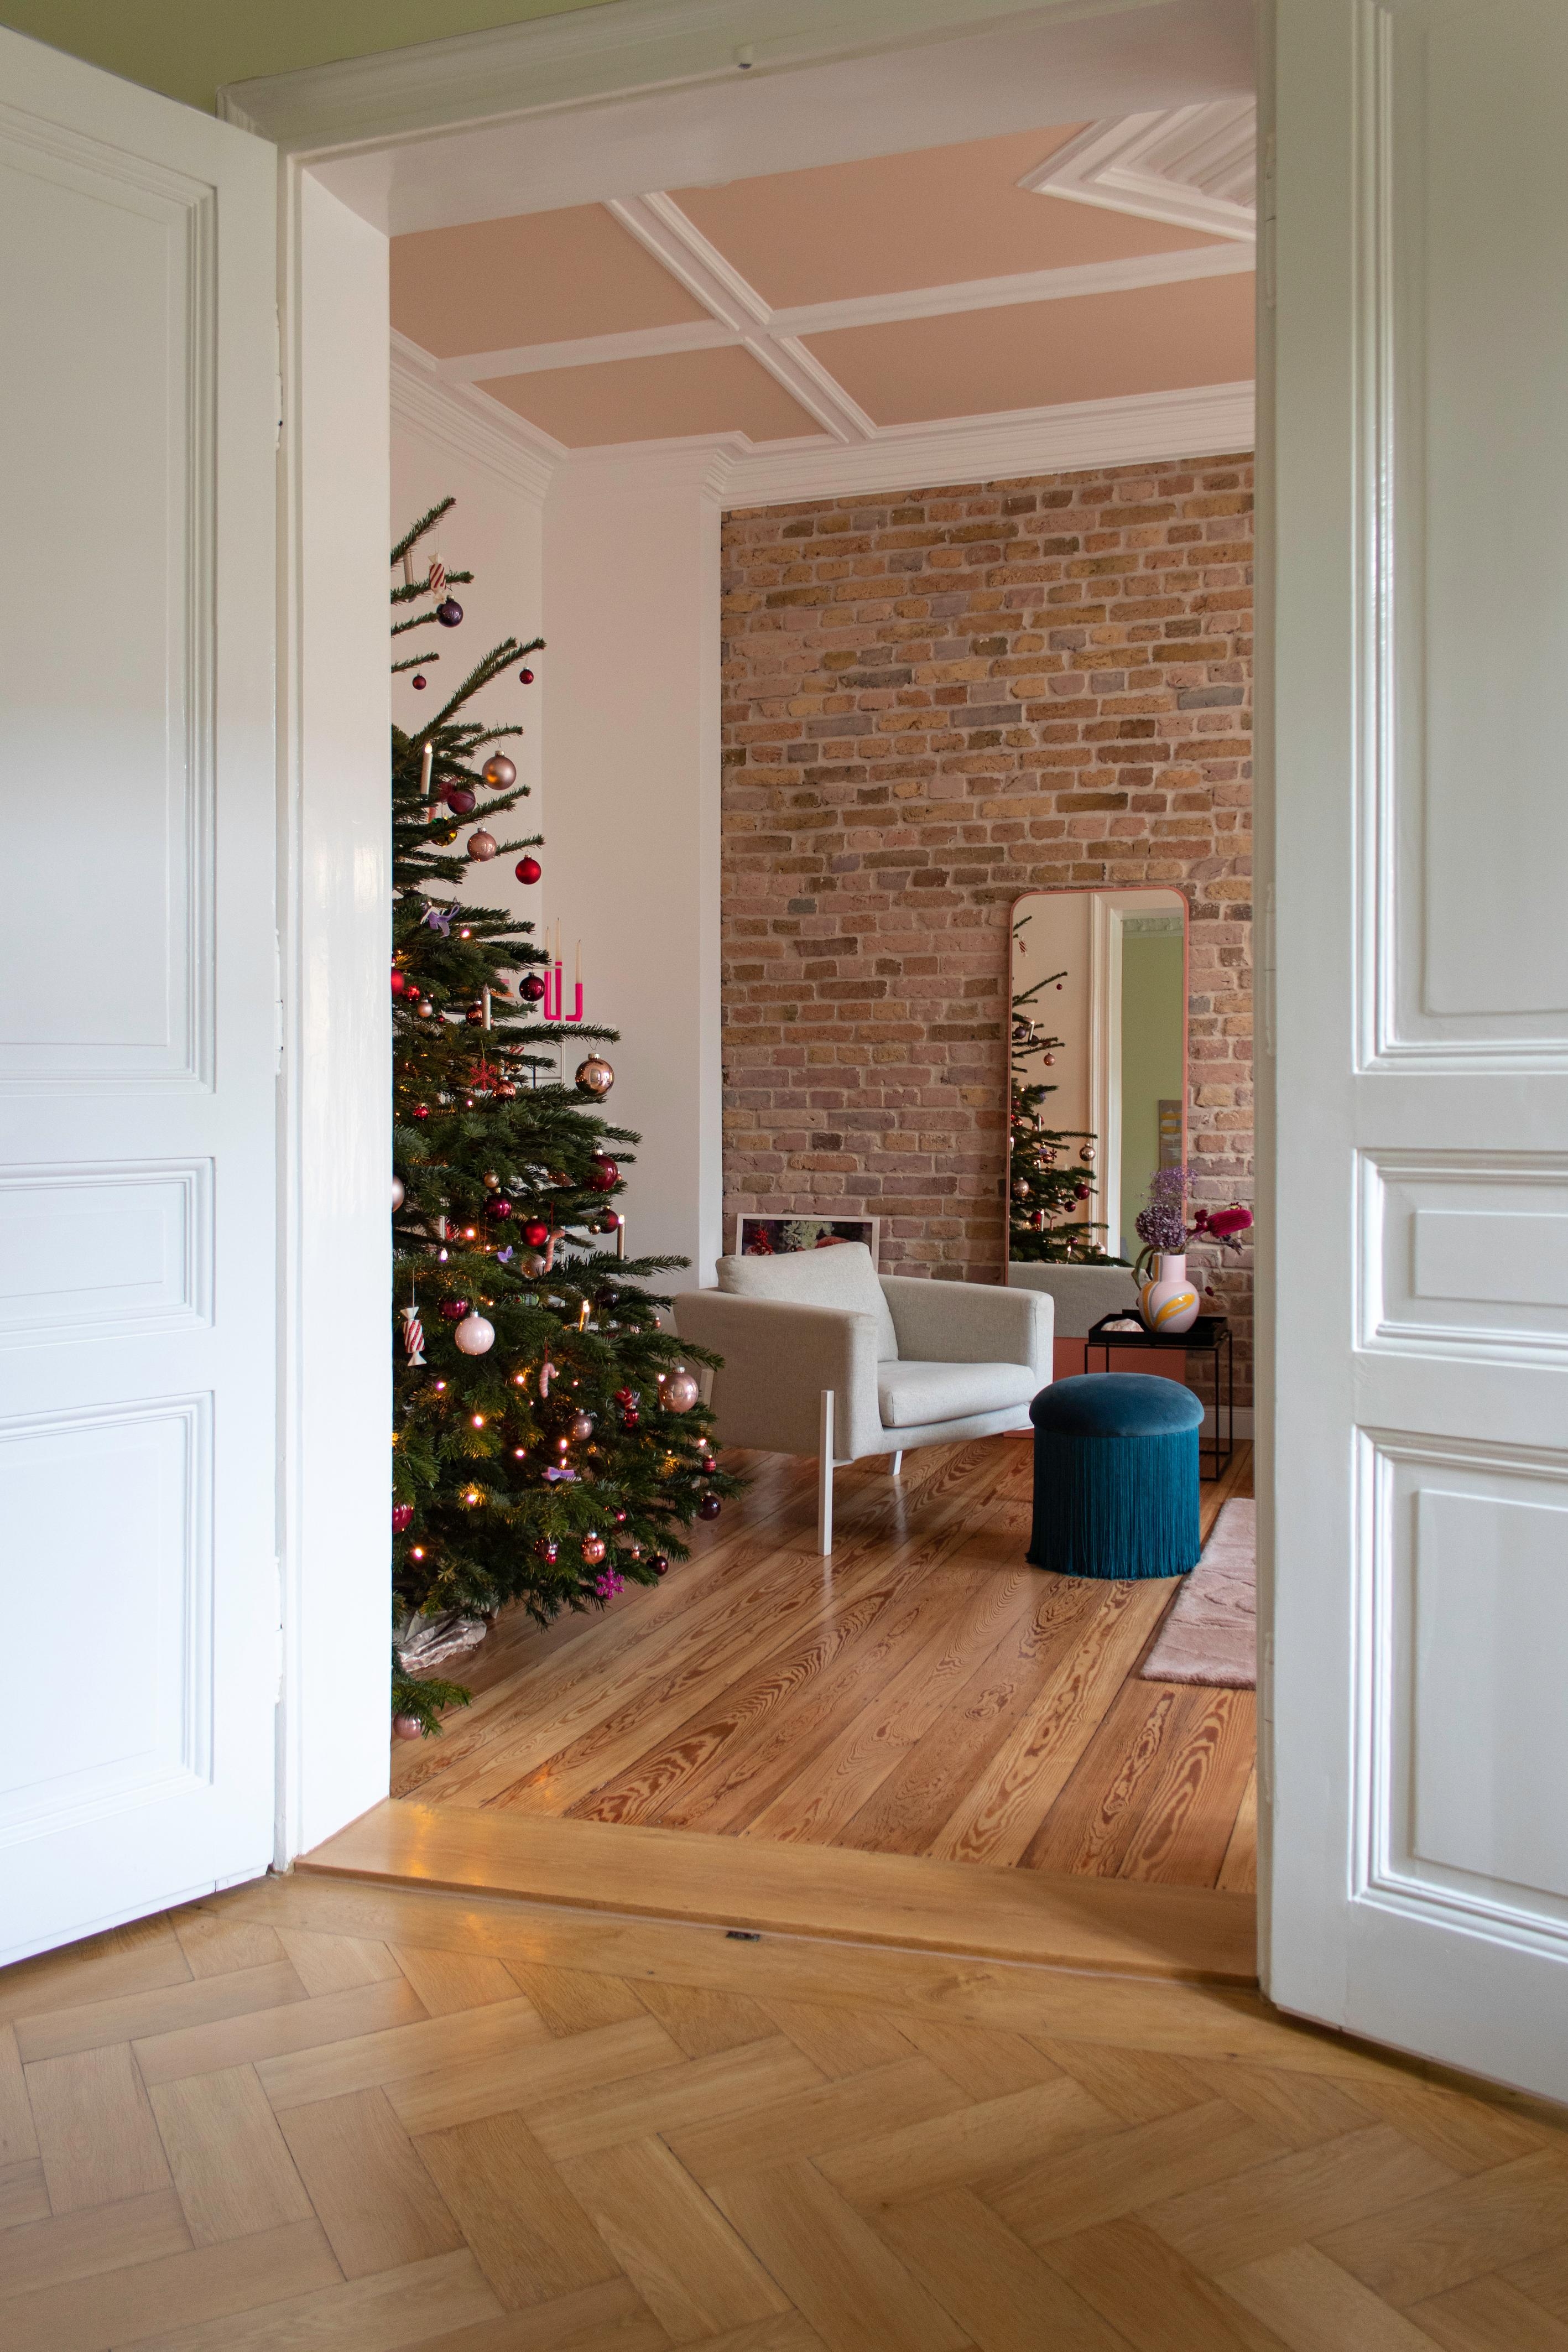 #Weihnachten #Advent #Couchliebt #Weihnachtsbaum #Rosa #Altbau #Wohnzimmer #farbenfroh #Rosa